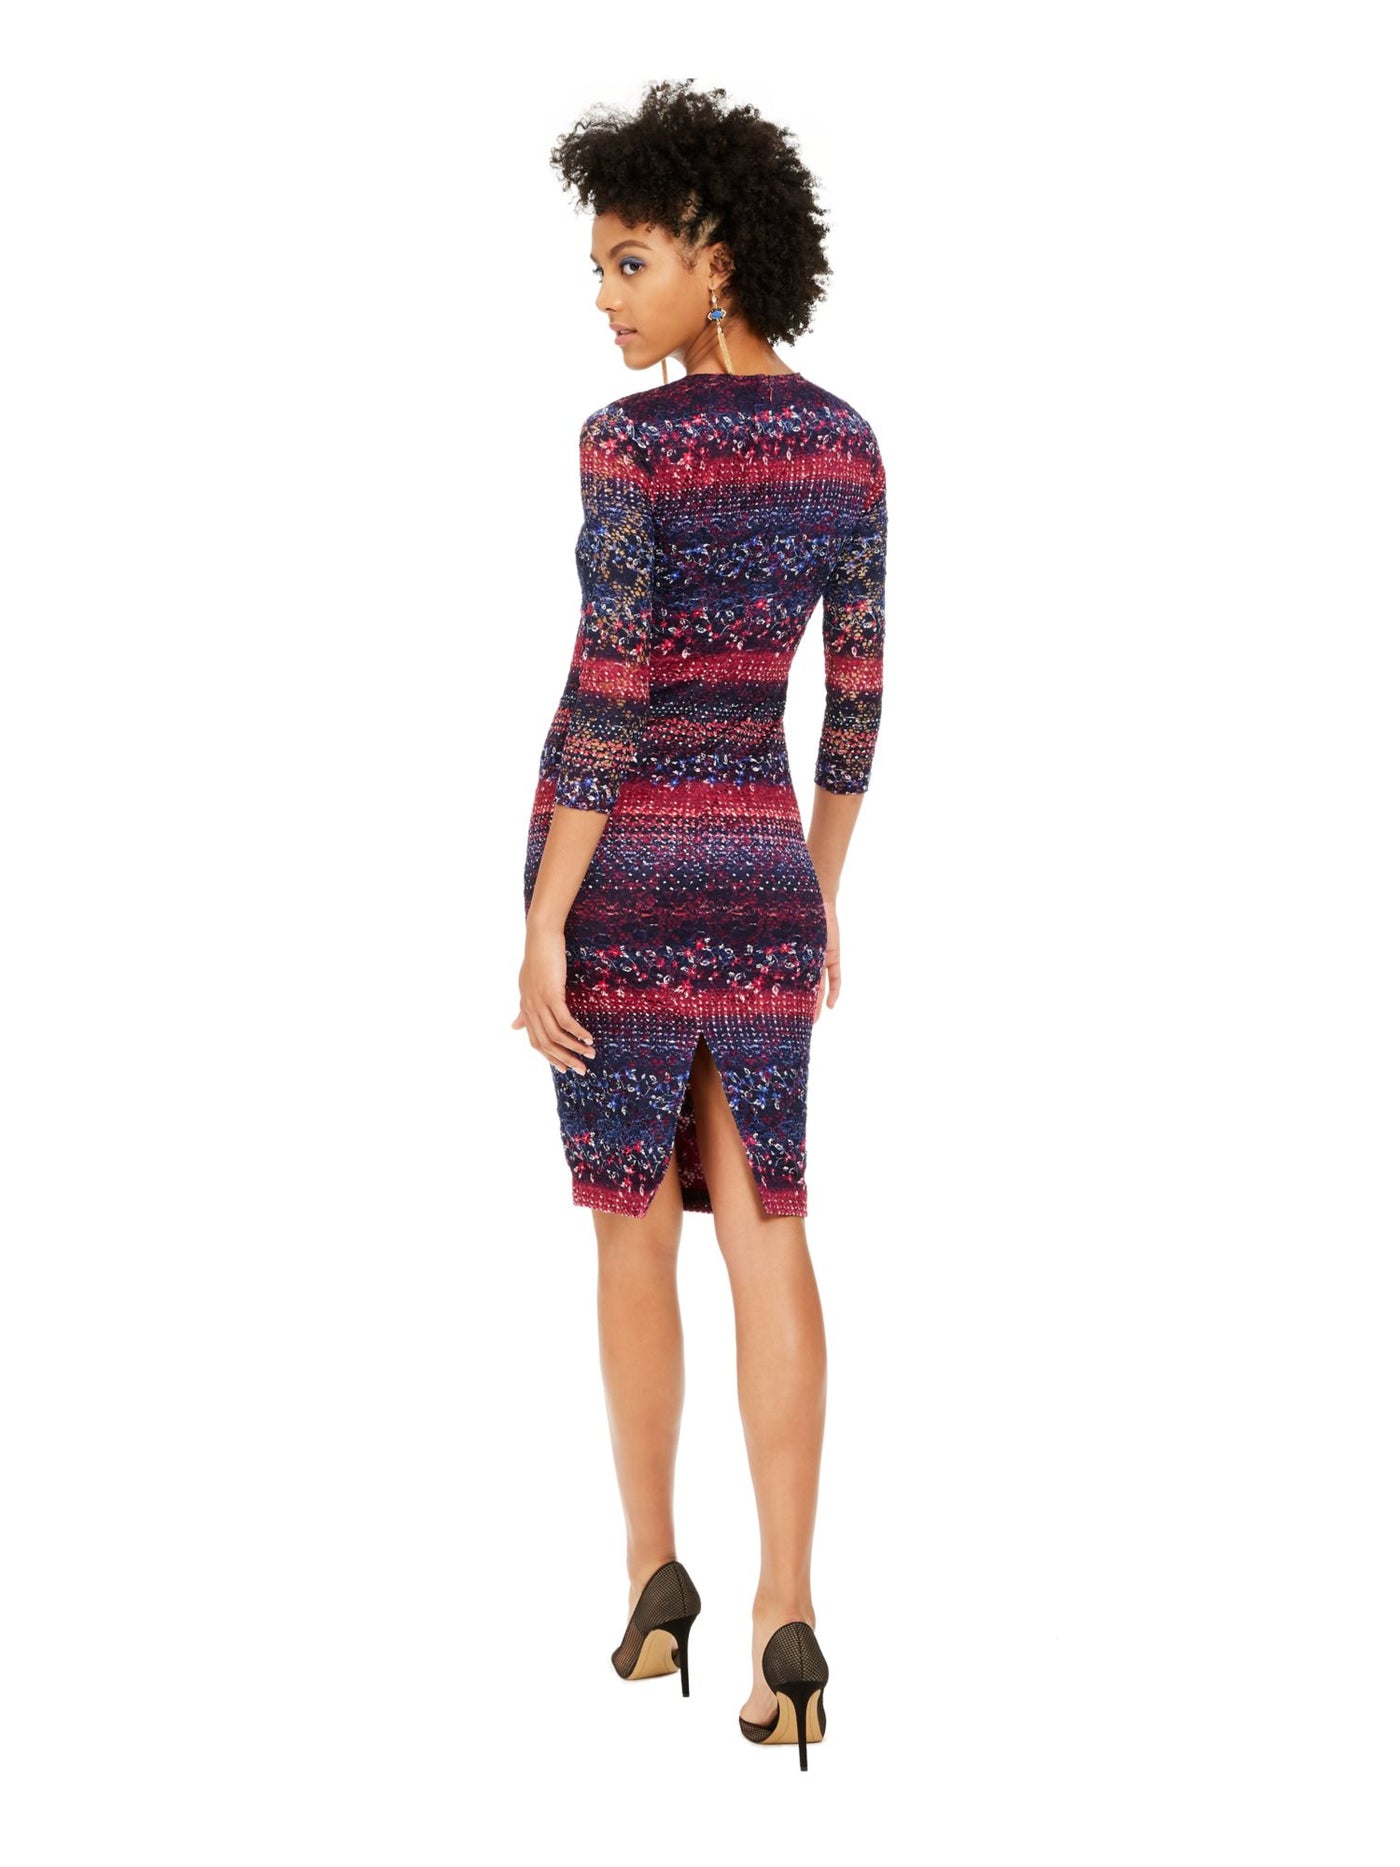 KENSIE DRESSES Womens Purple Textured Printed 3/4 Sleeve Jewel Neck Knee Length Dress Juniors 16